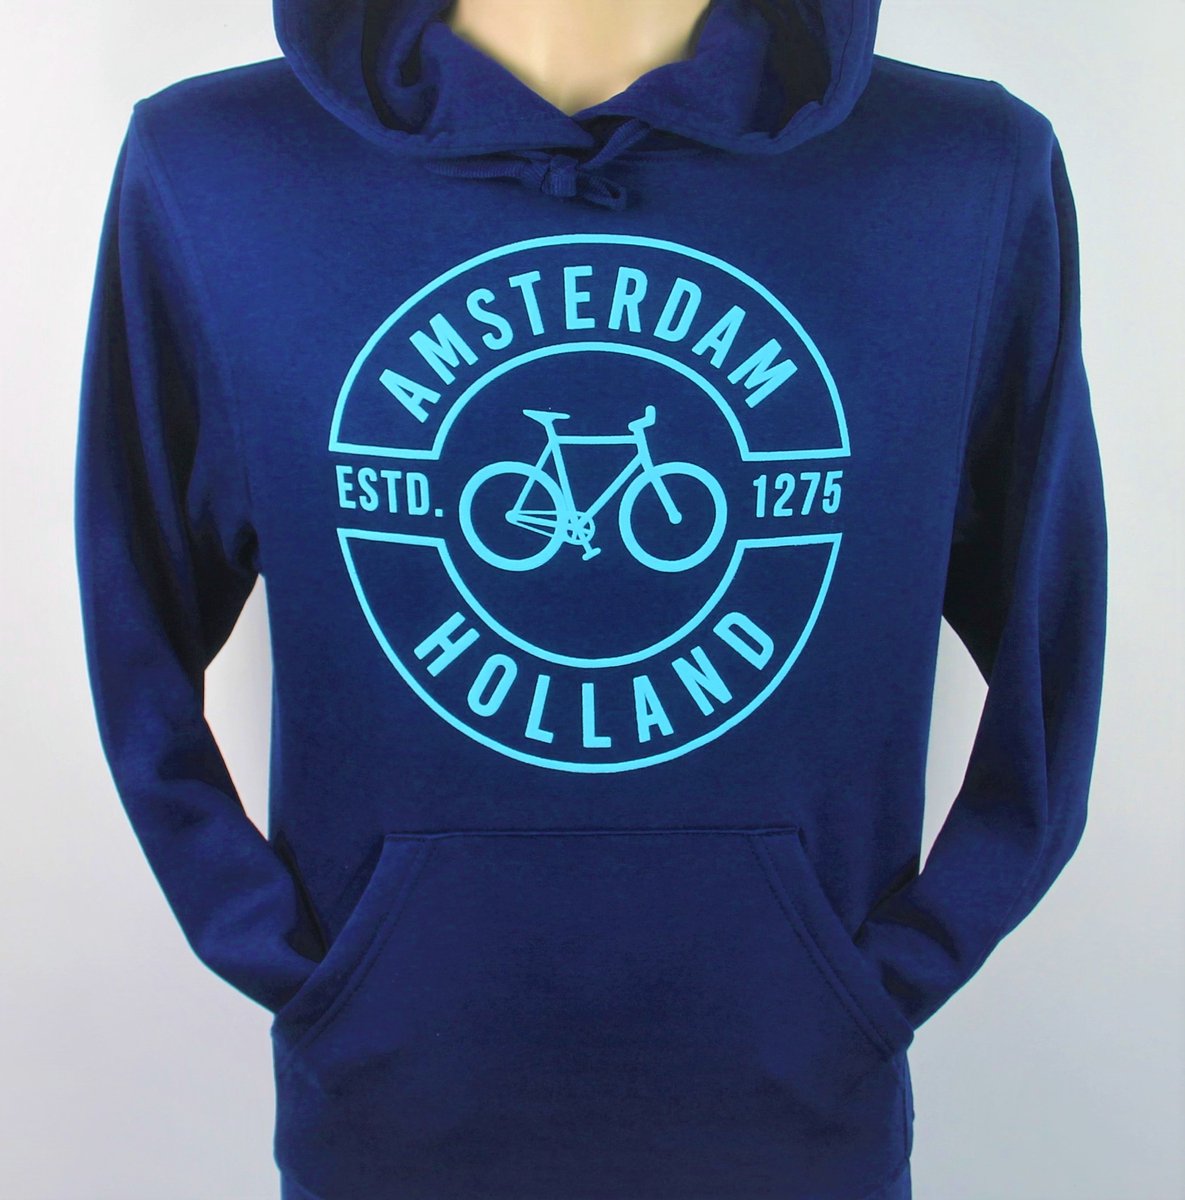 Hooded Sweater - Met Trekkoord - Capuchon - Chill - Trui - Vest - met capuchon - Outdoor - Fiets - Discover - 1275 -Amsterdam - Bike Town - Travel - Blauwe Fiets - Navy - Maat XL